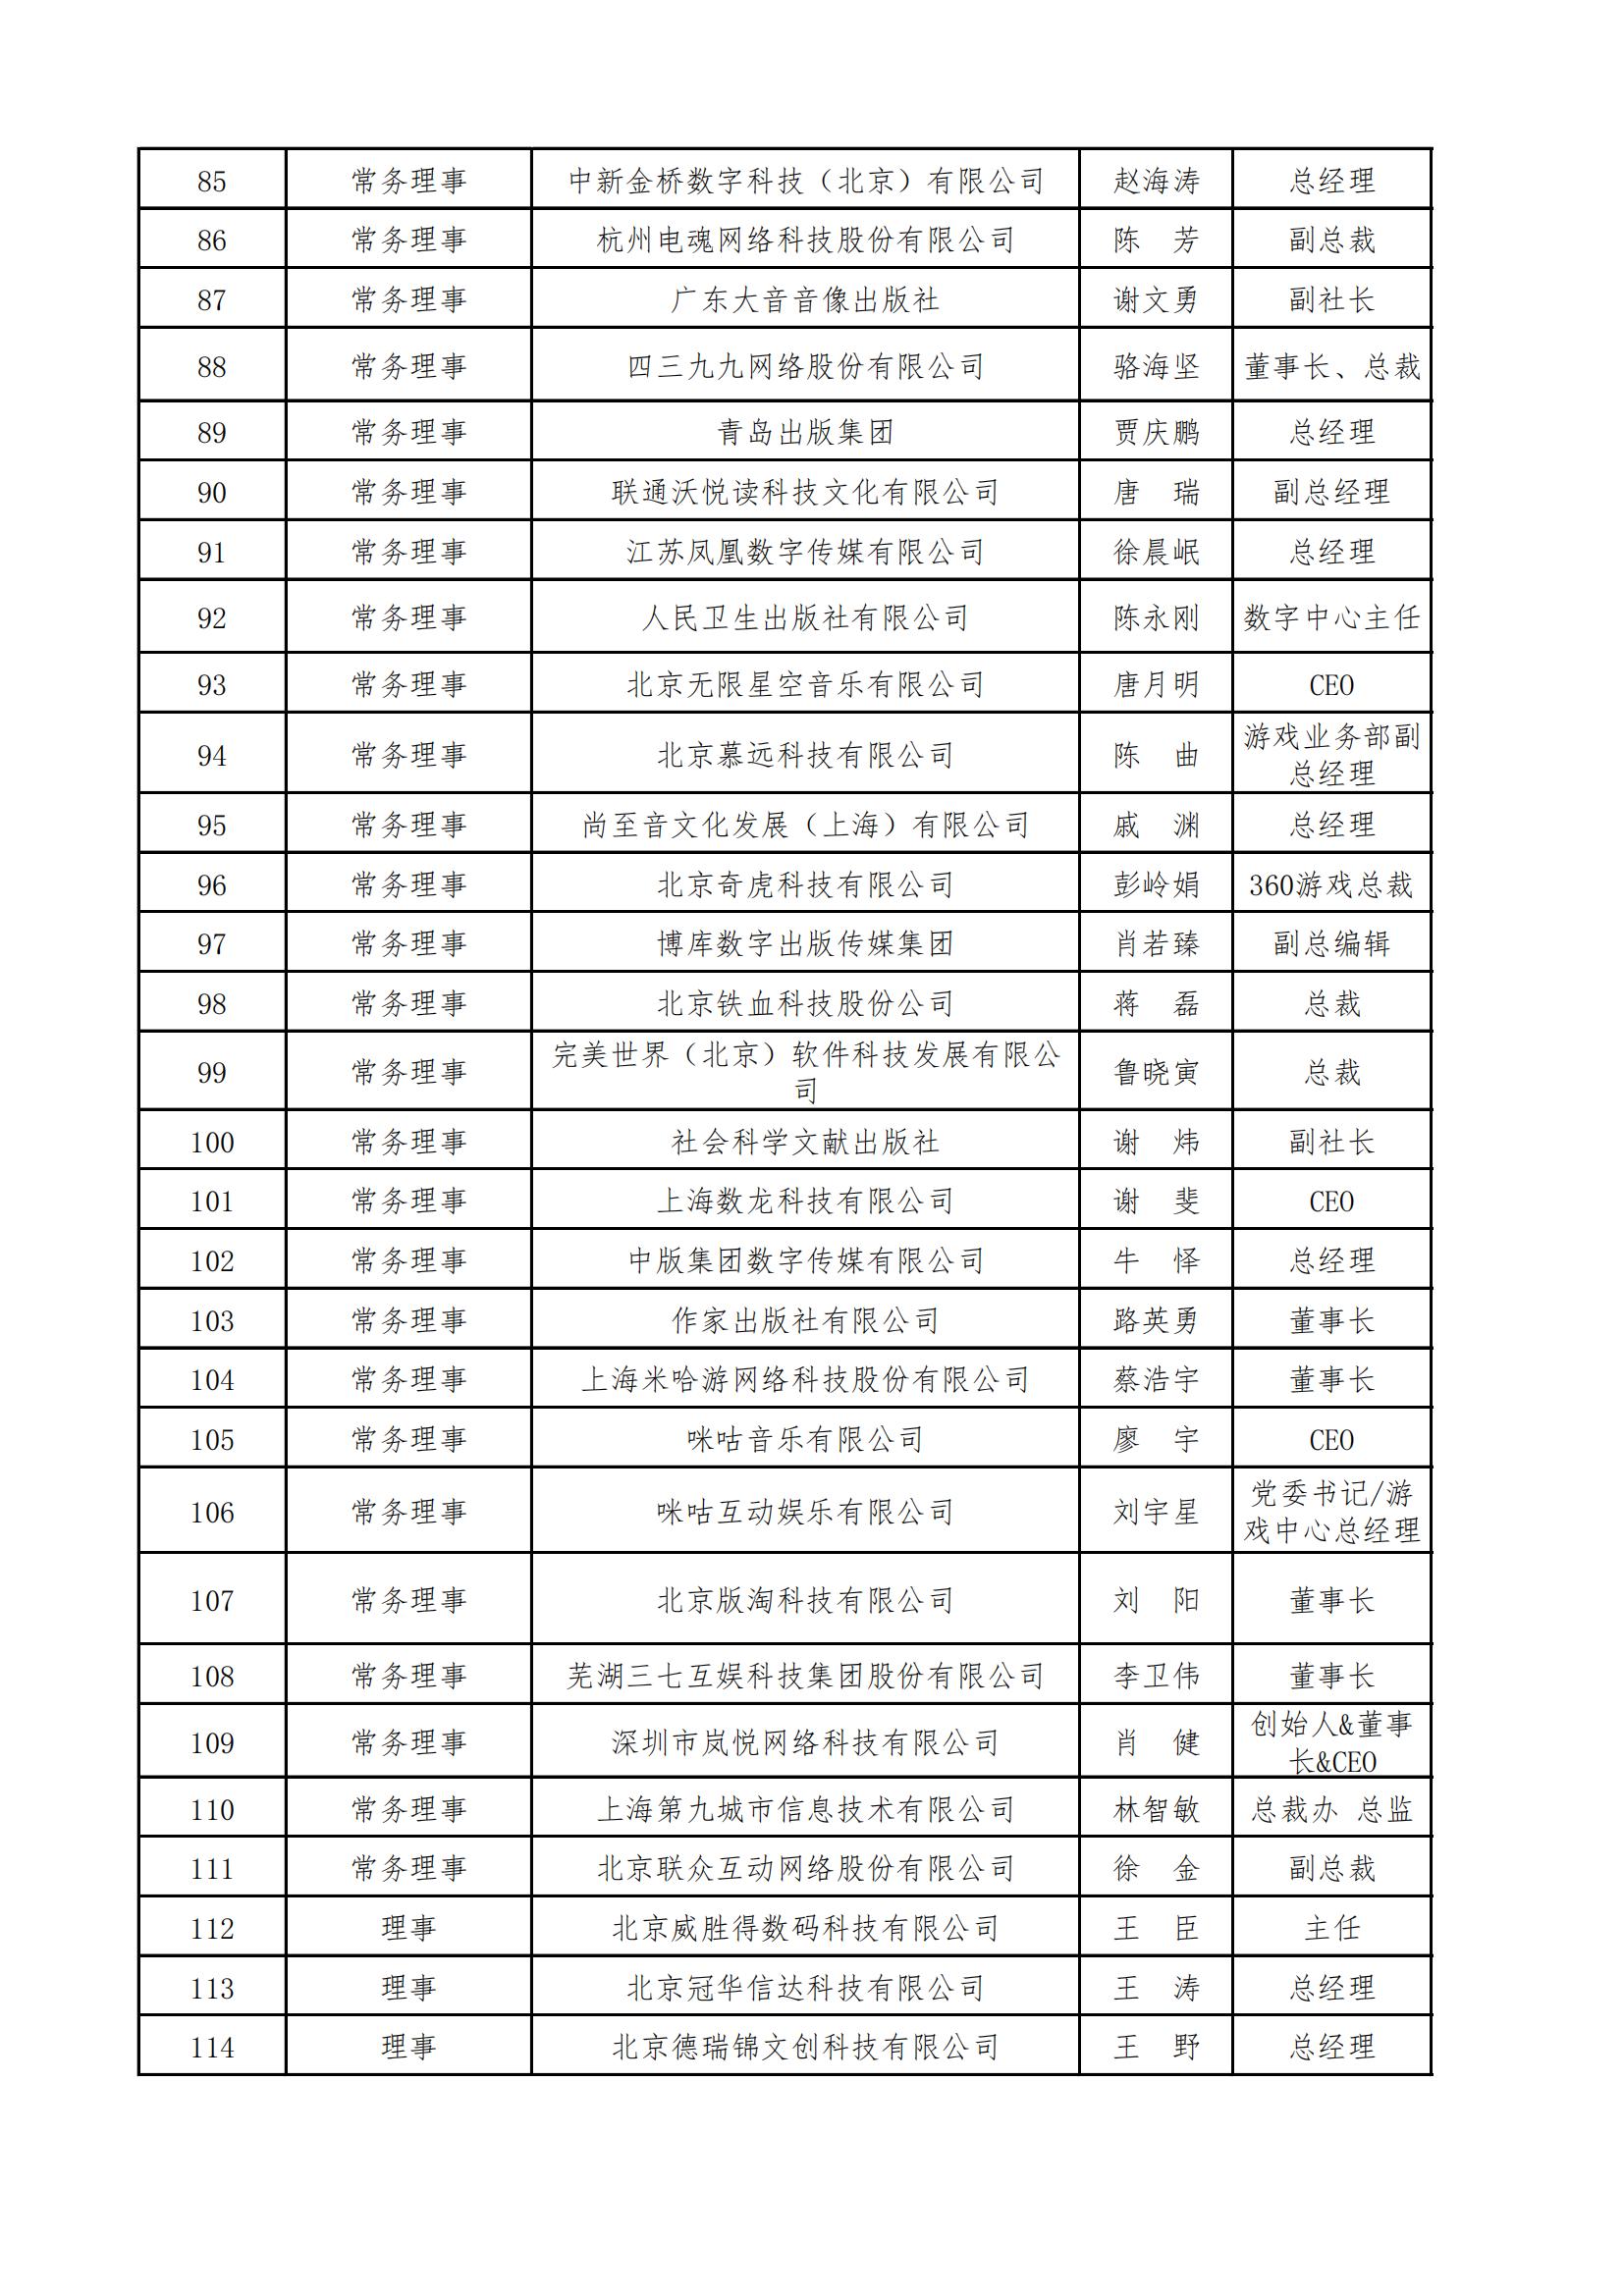 中国音像与数字出版协会第五届理事会名录_03.jpg